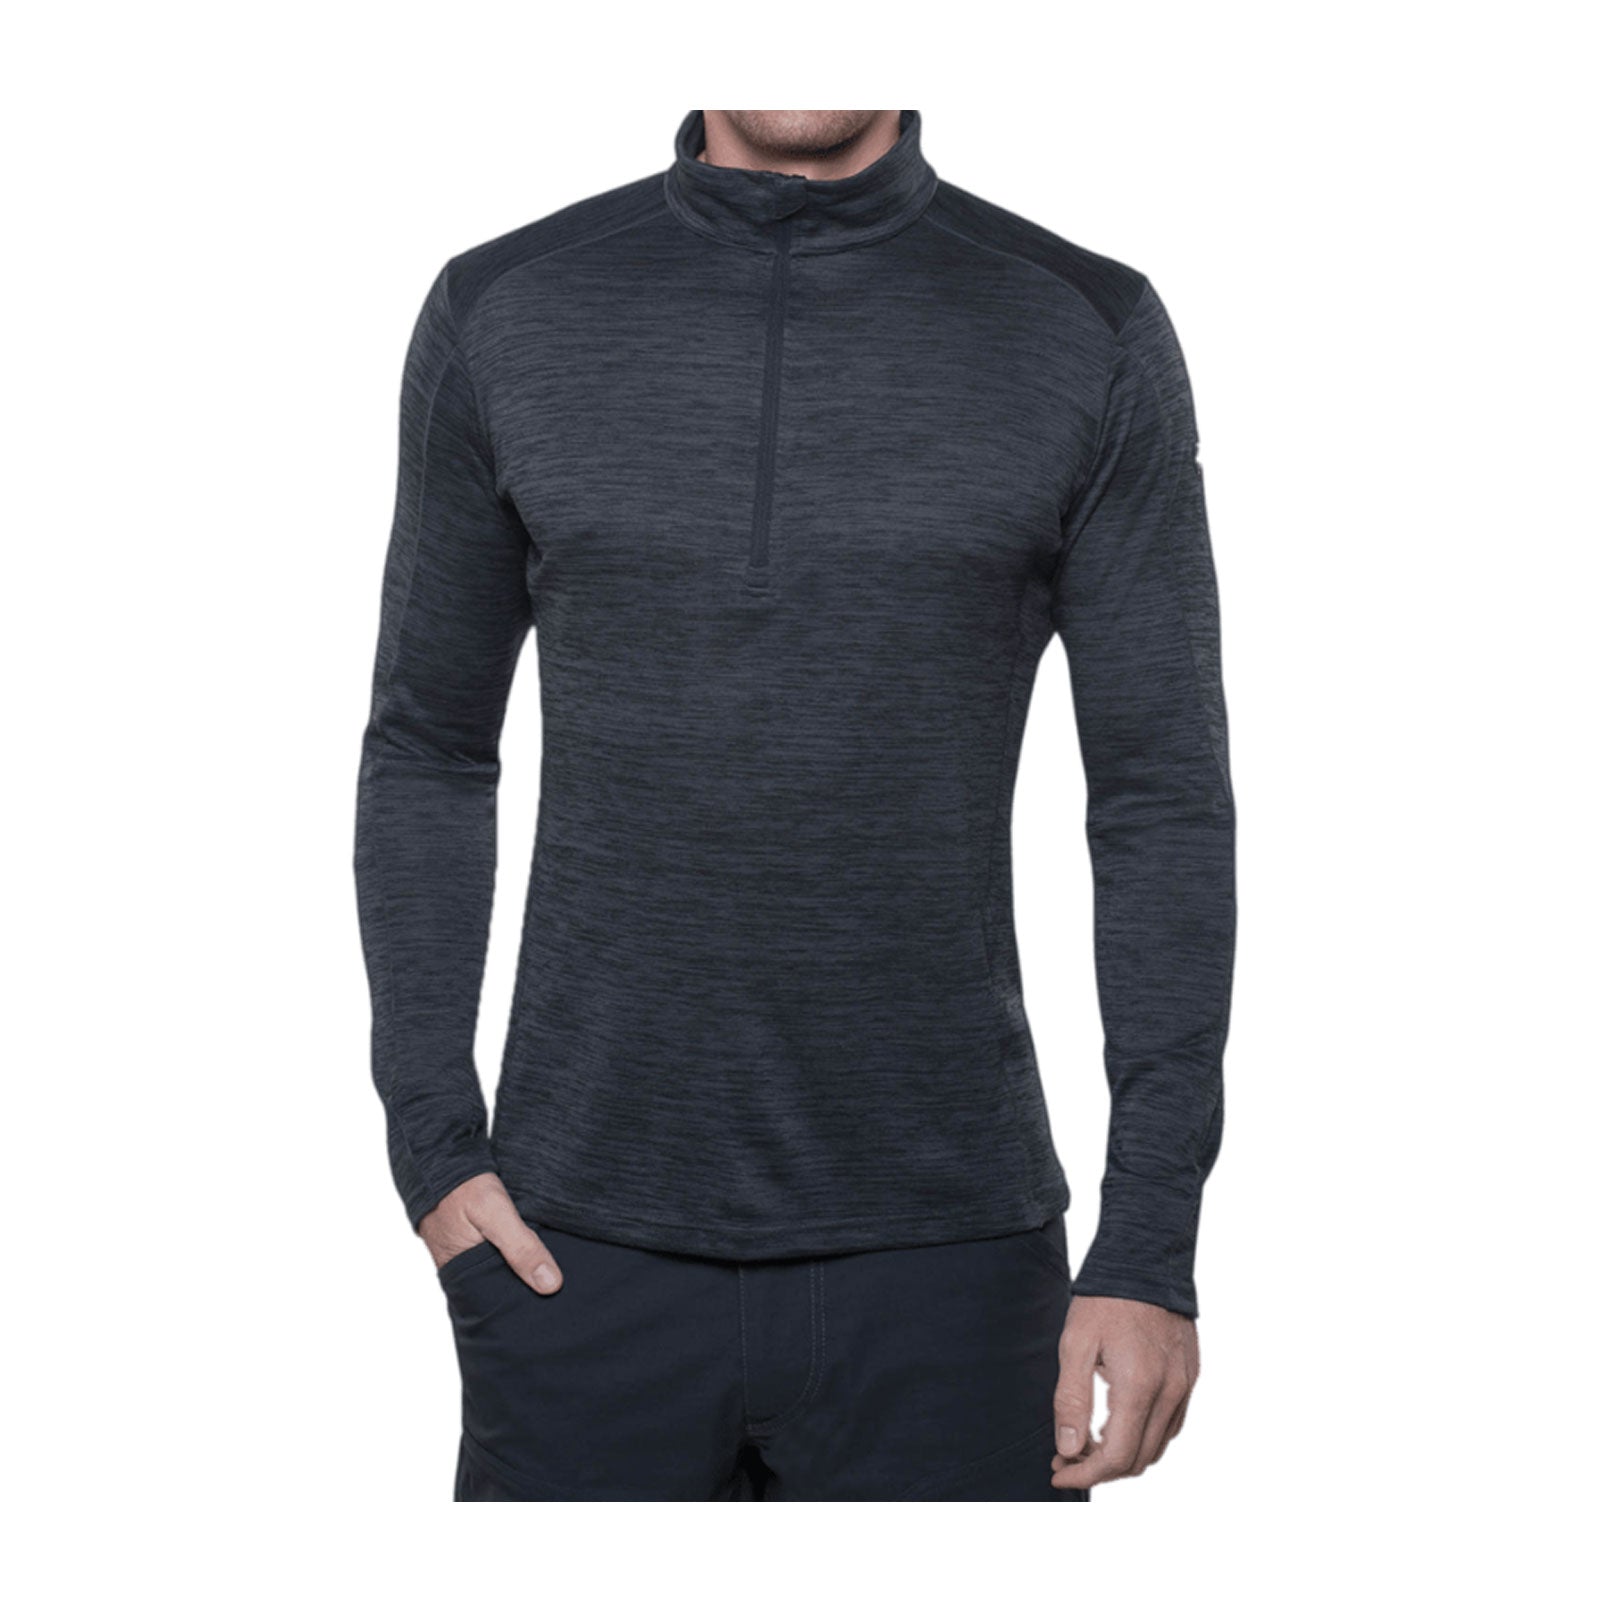 Kuhl Alloy 1/4 Zip Sweater (Men) - Graphite Sportswear - Upperbody - Long Sleeve - The Heel Shoe Fitters